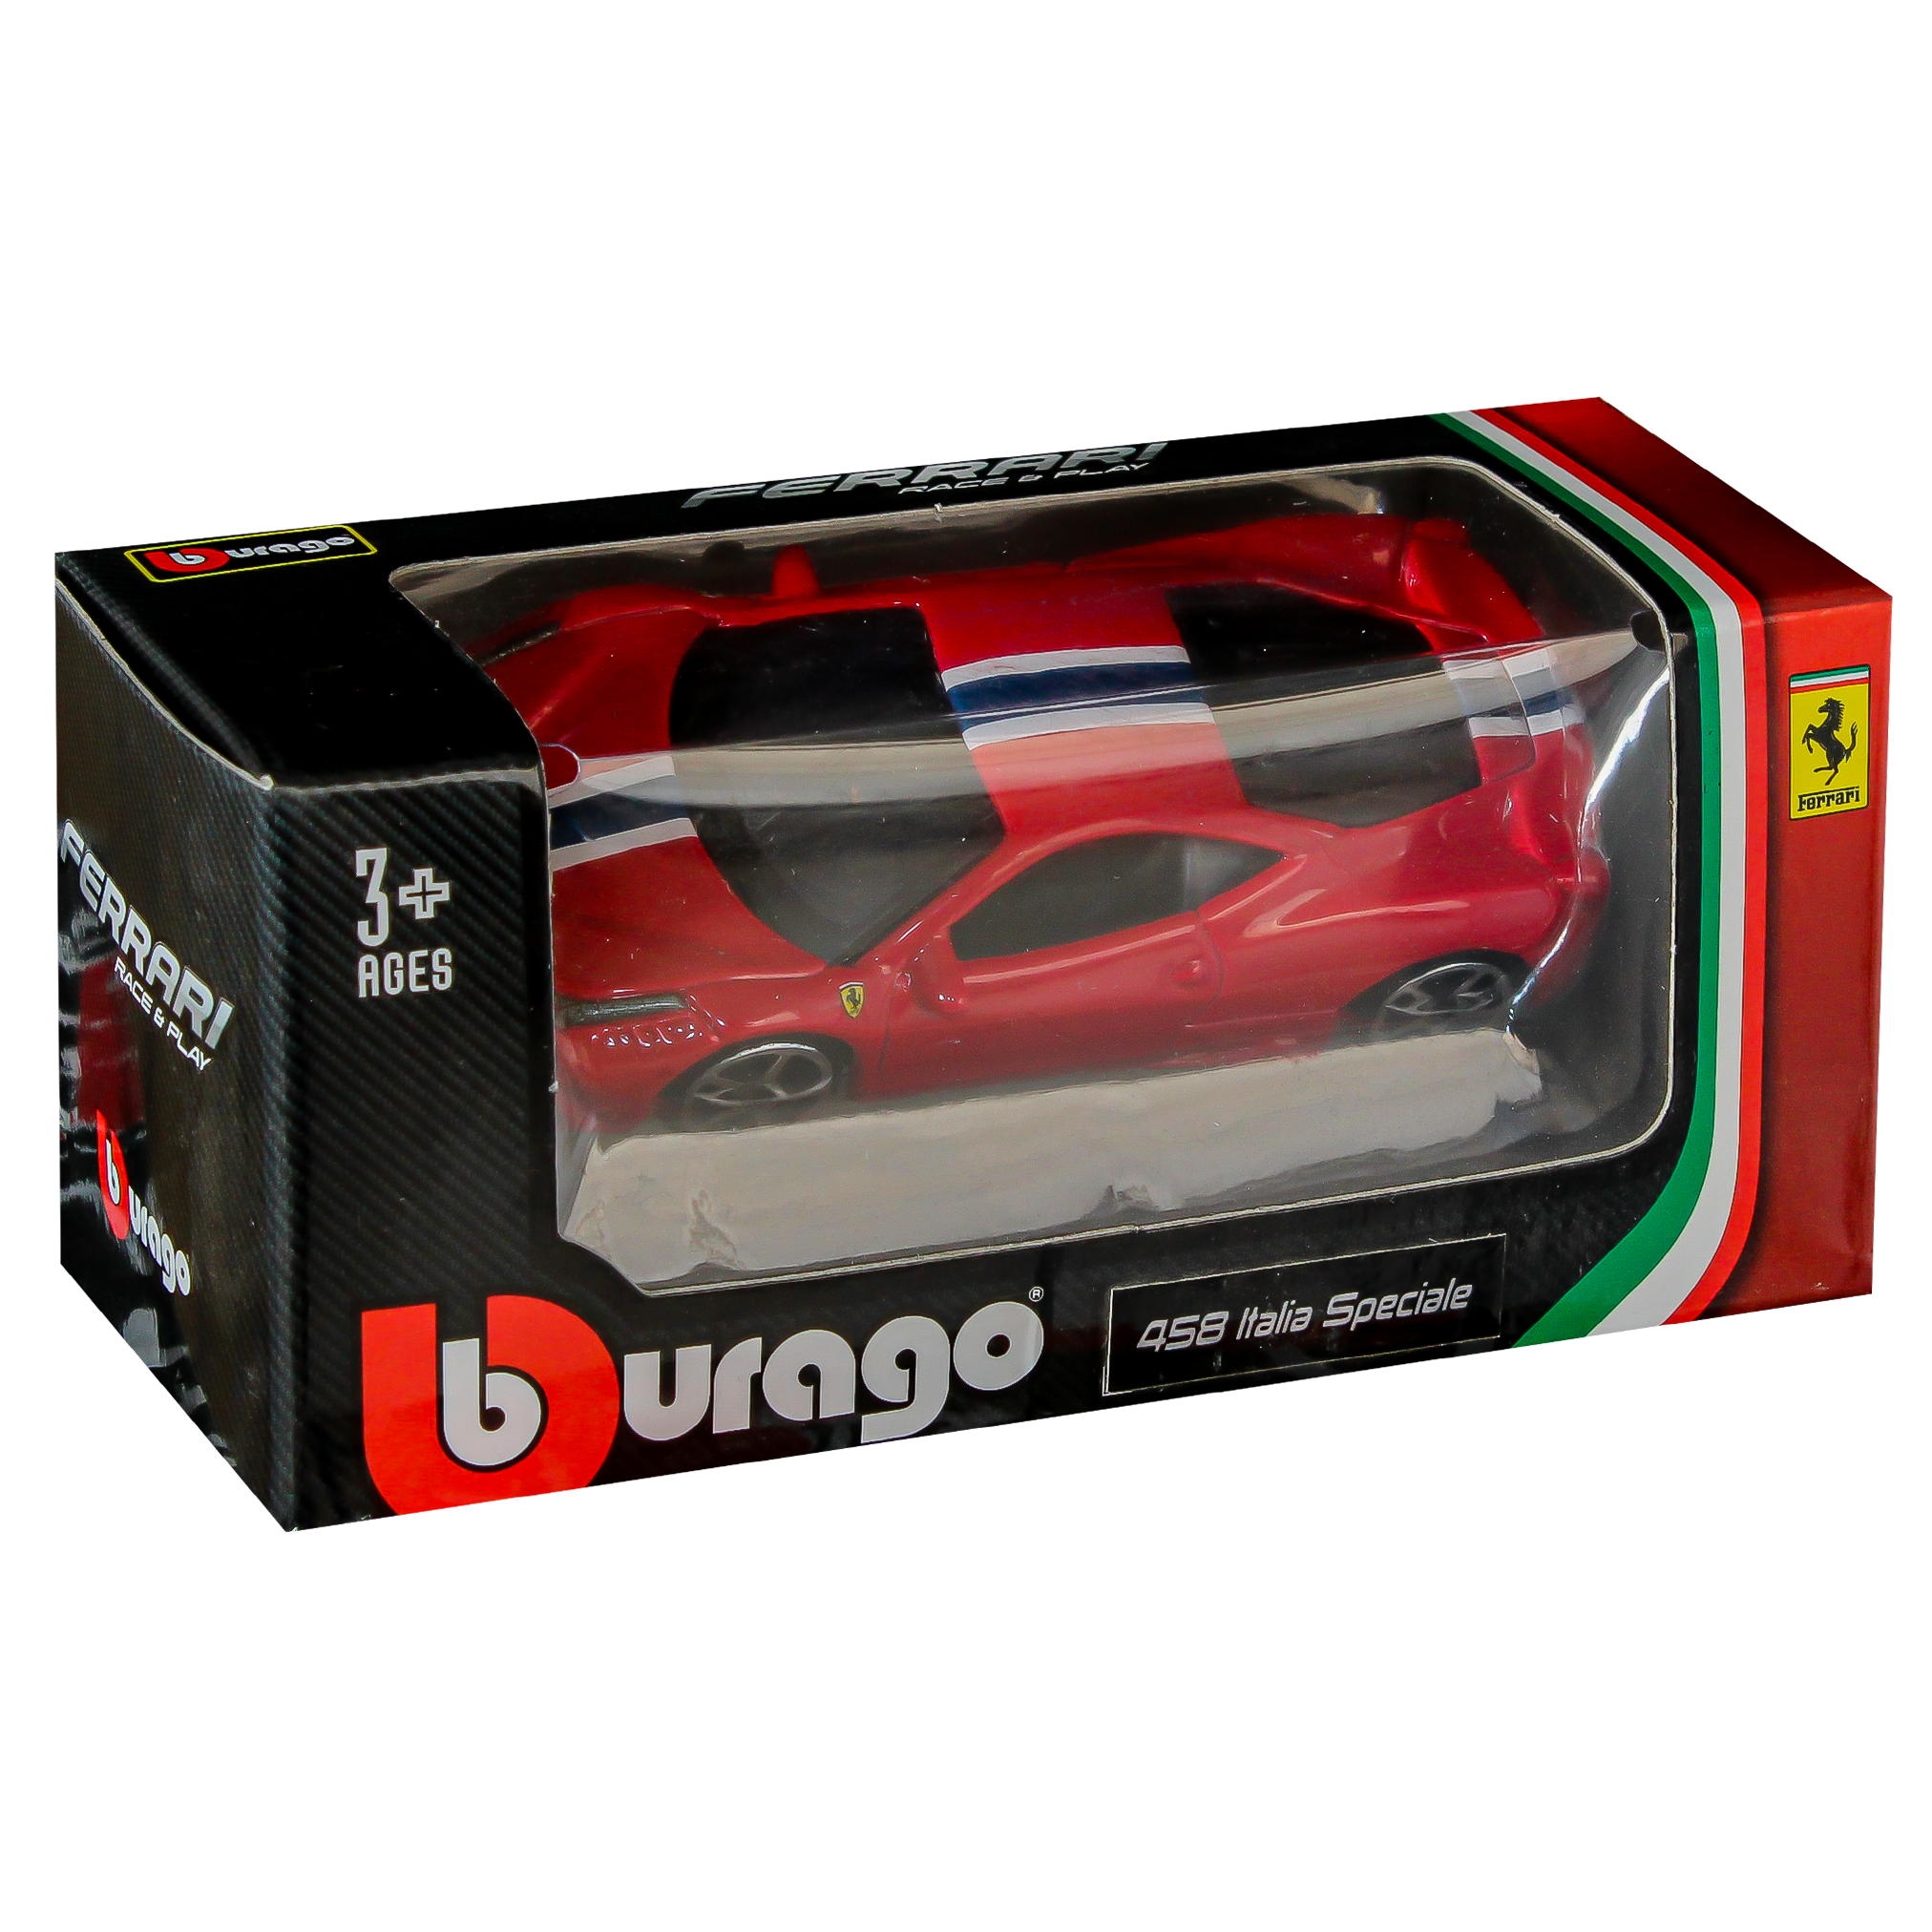 Burago Ferrari Race & Play Car - 458 Italia Speciale